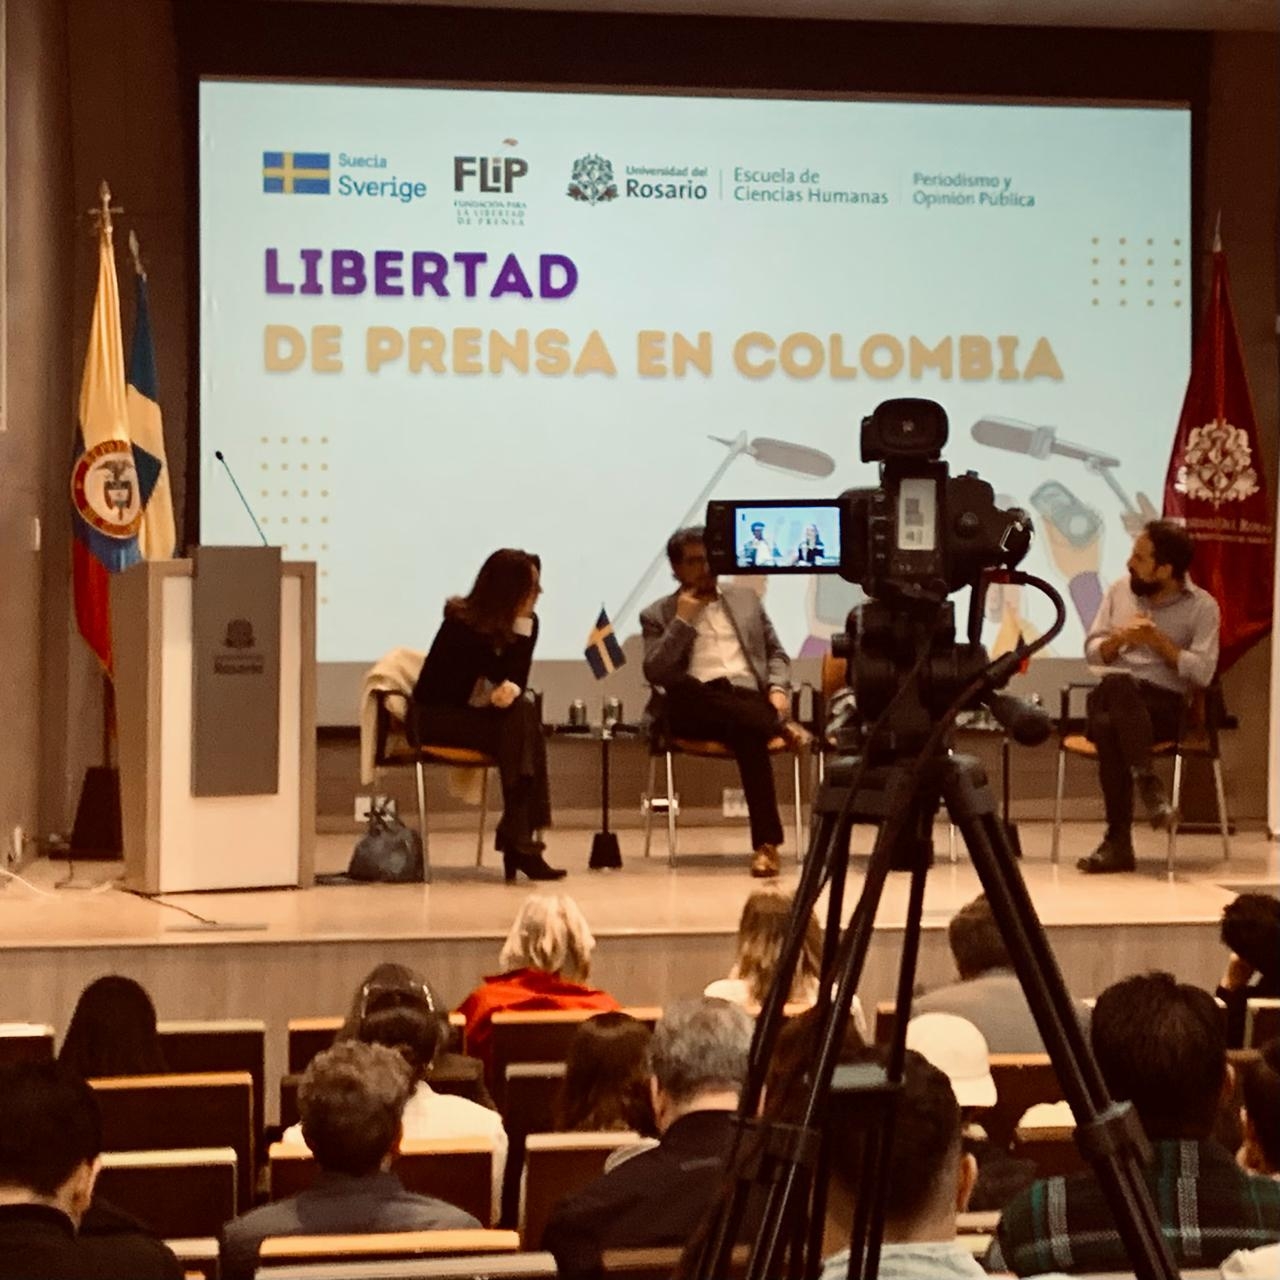 Los 3 peligros que sufre la libertad de prensa en Colombia